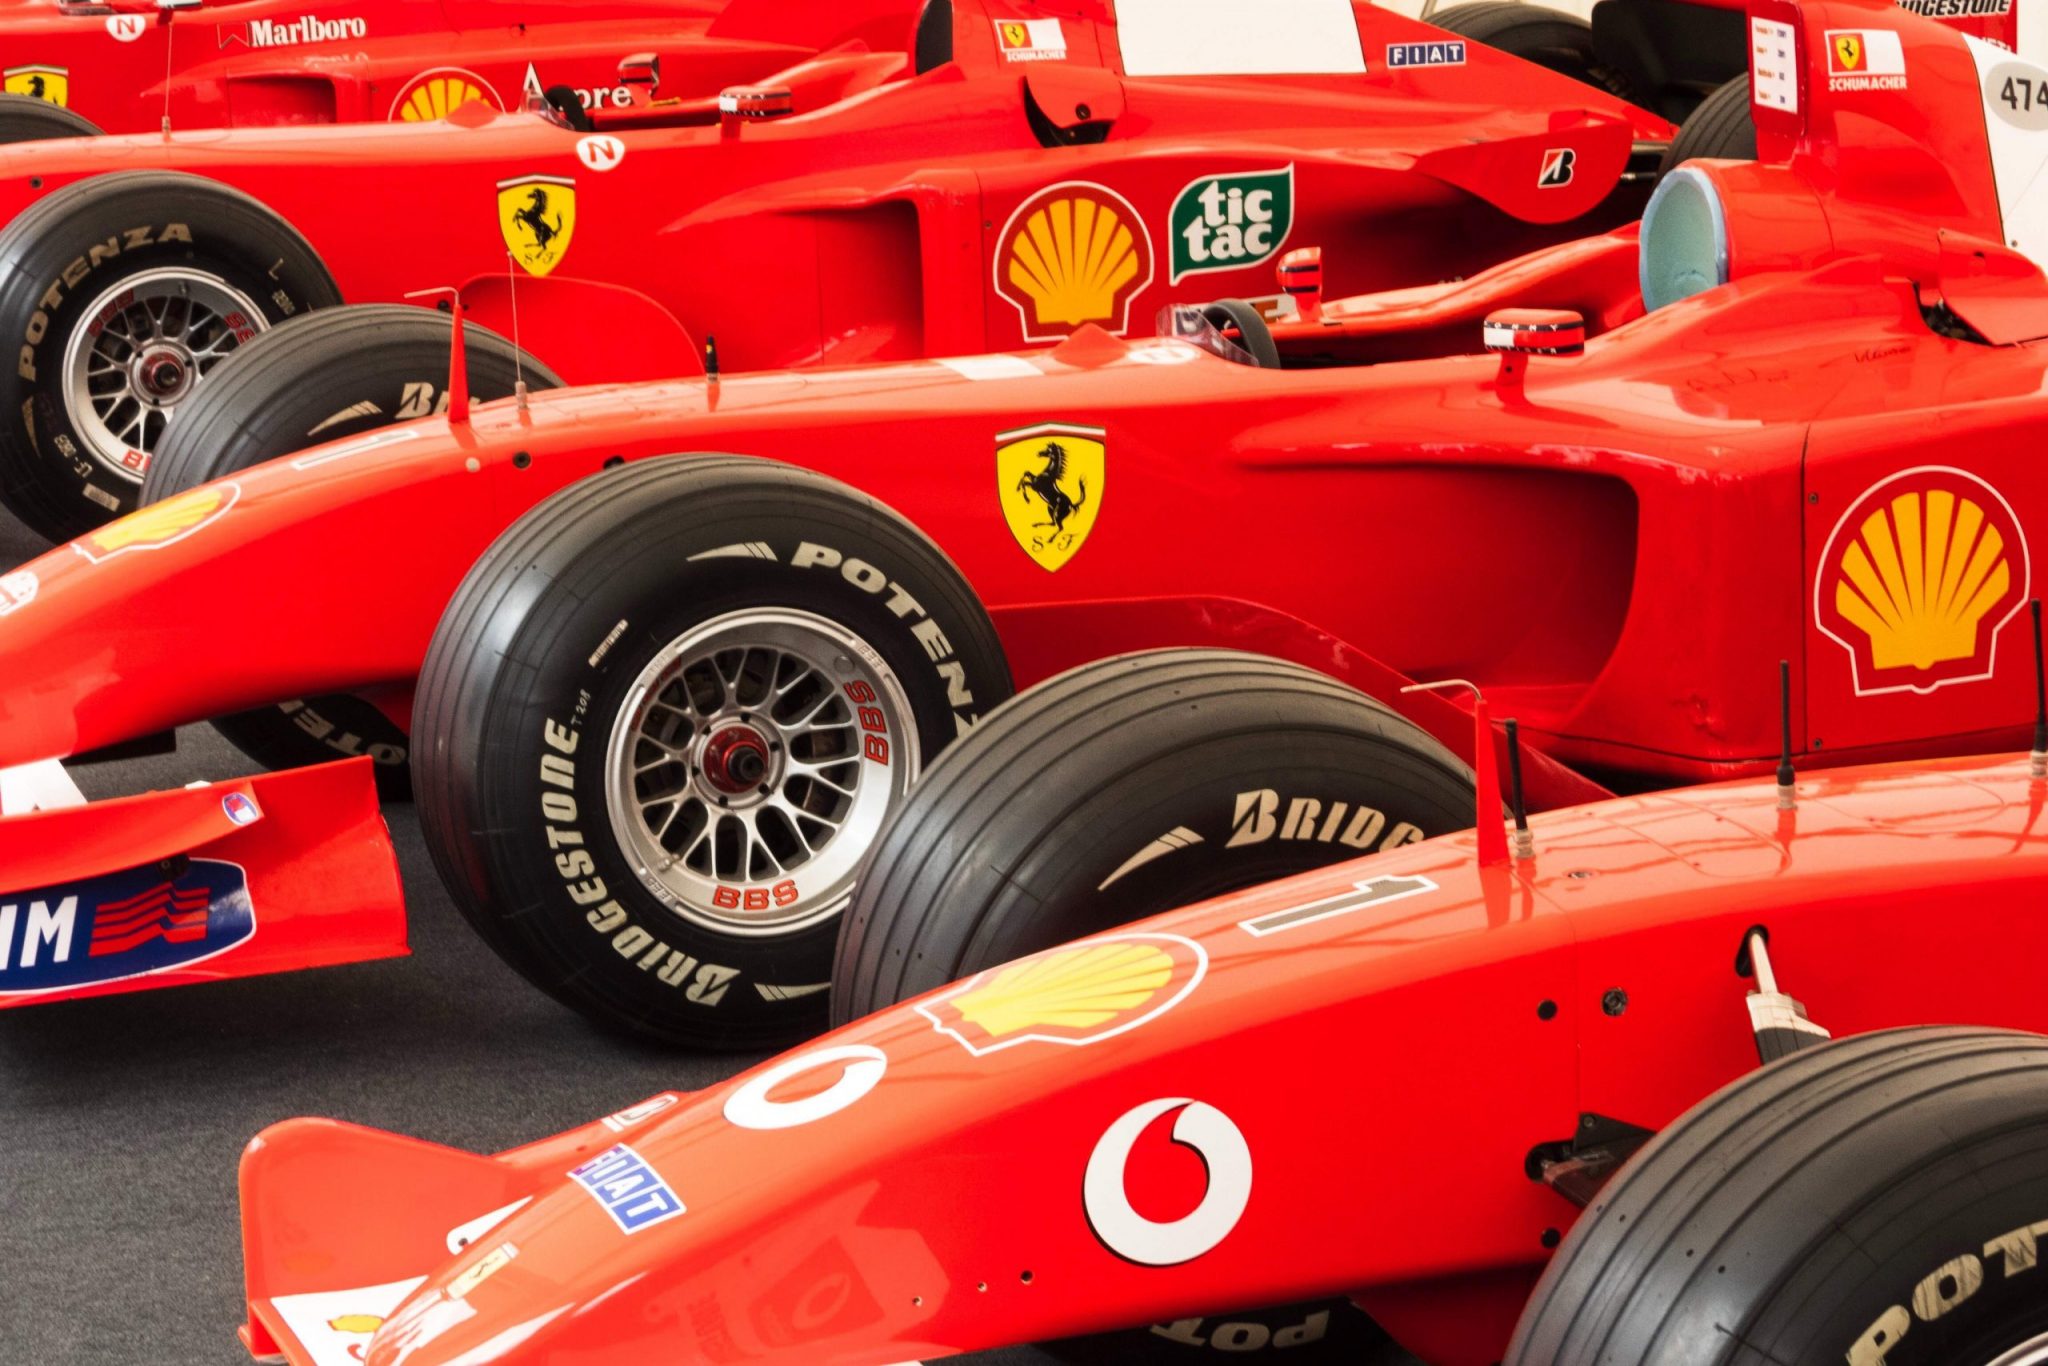 Ferrari llega a un acuerdo de varios años con la empresa de tecnología suiza Velas